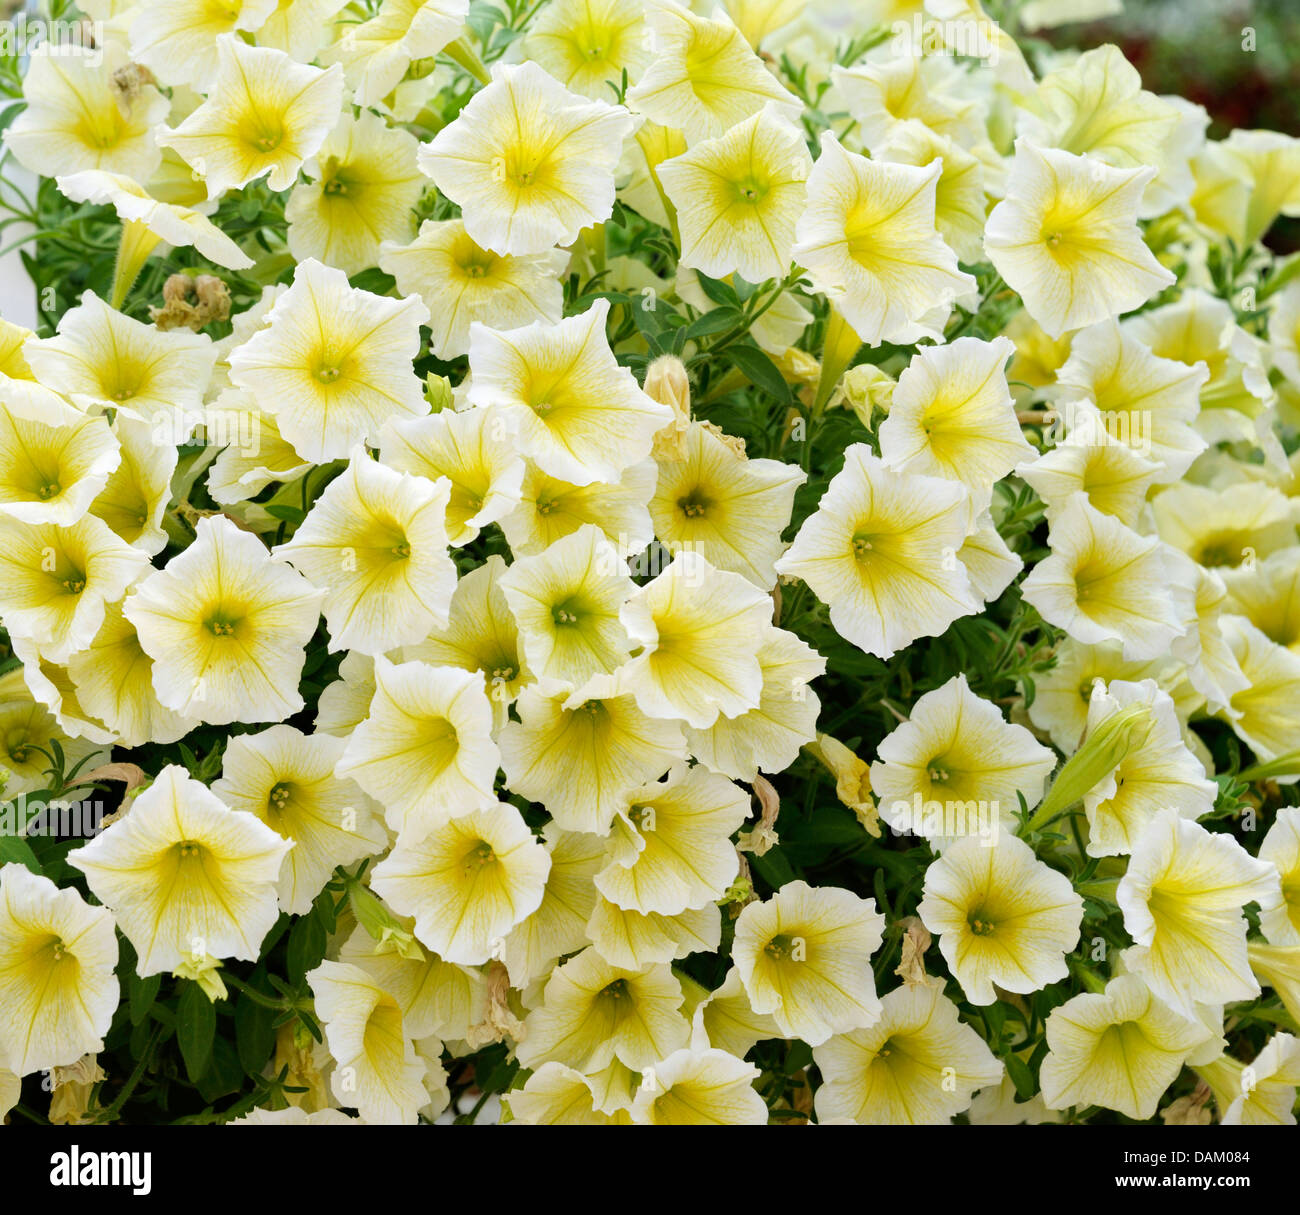 Pétunia (Petunia 'jardin' jaune, Petunia jaune), le cultivar, la floraison jaune Banque D'Images